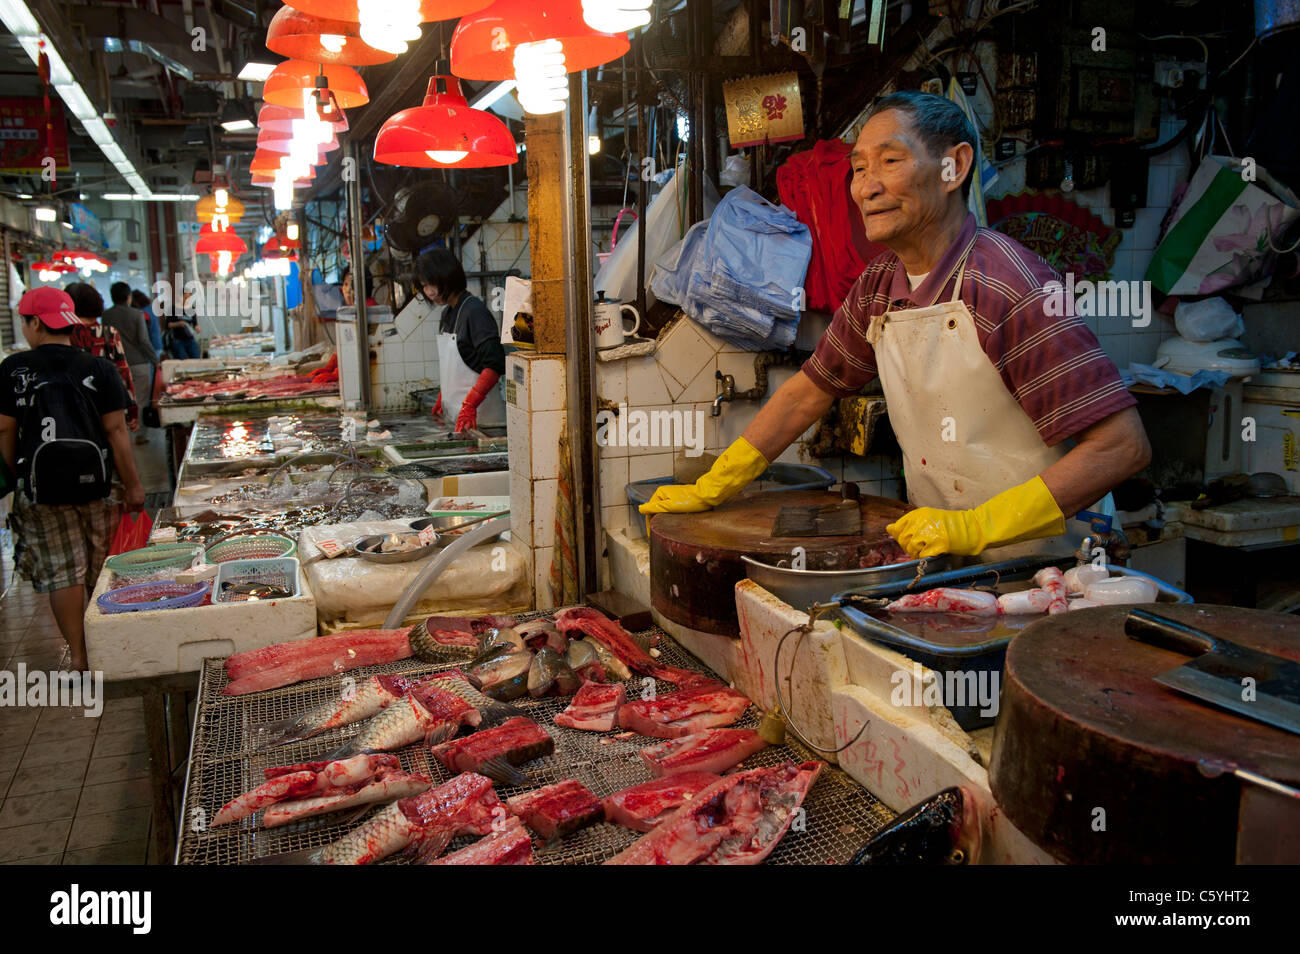 Les poissonniers échoppe de marché dans la région de Tung Choi Street Mong Kok, Kowloon, Hong Kong Banque D'Images